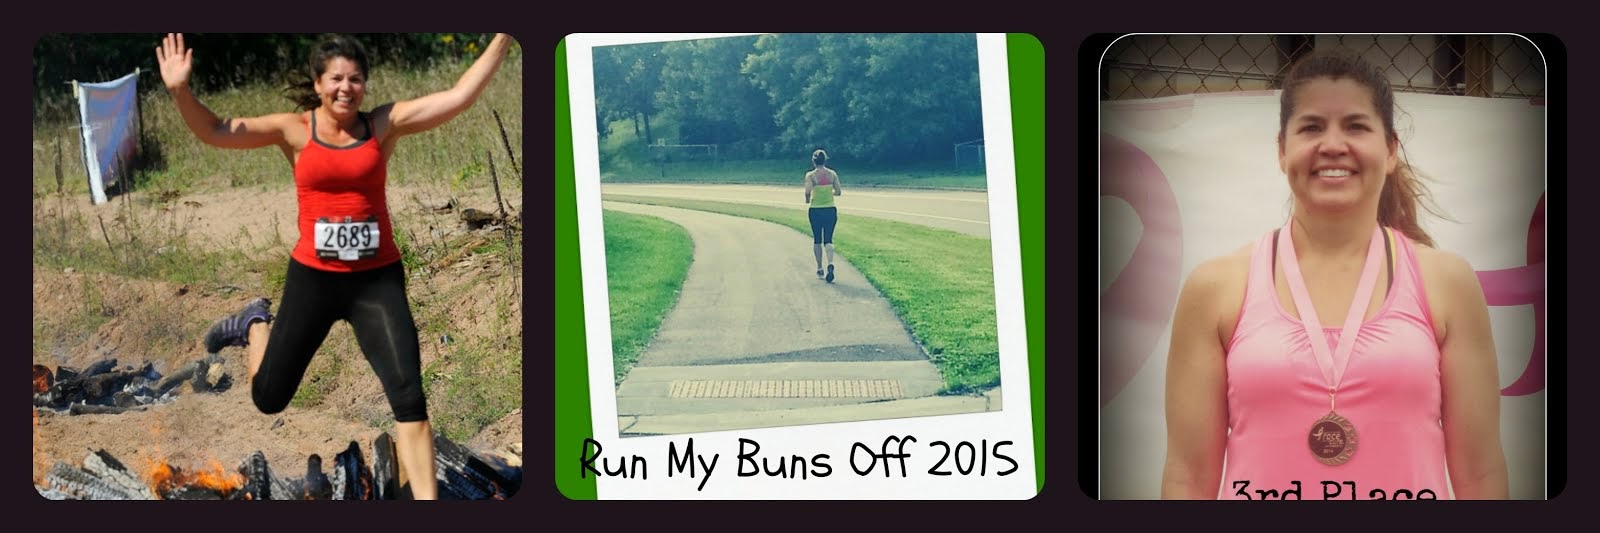 Run buns 2015